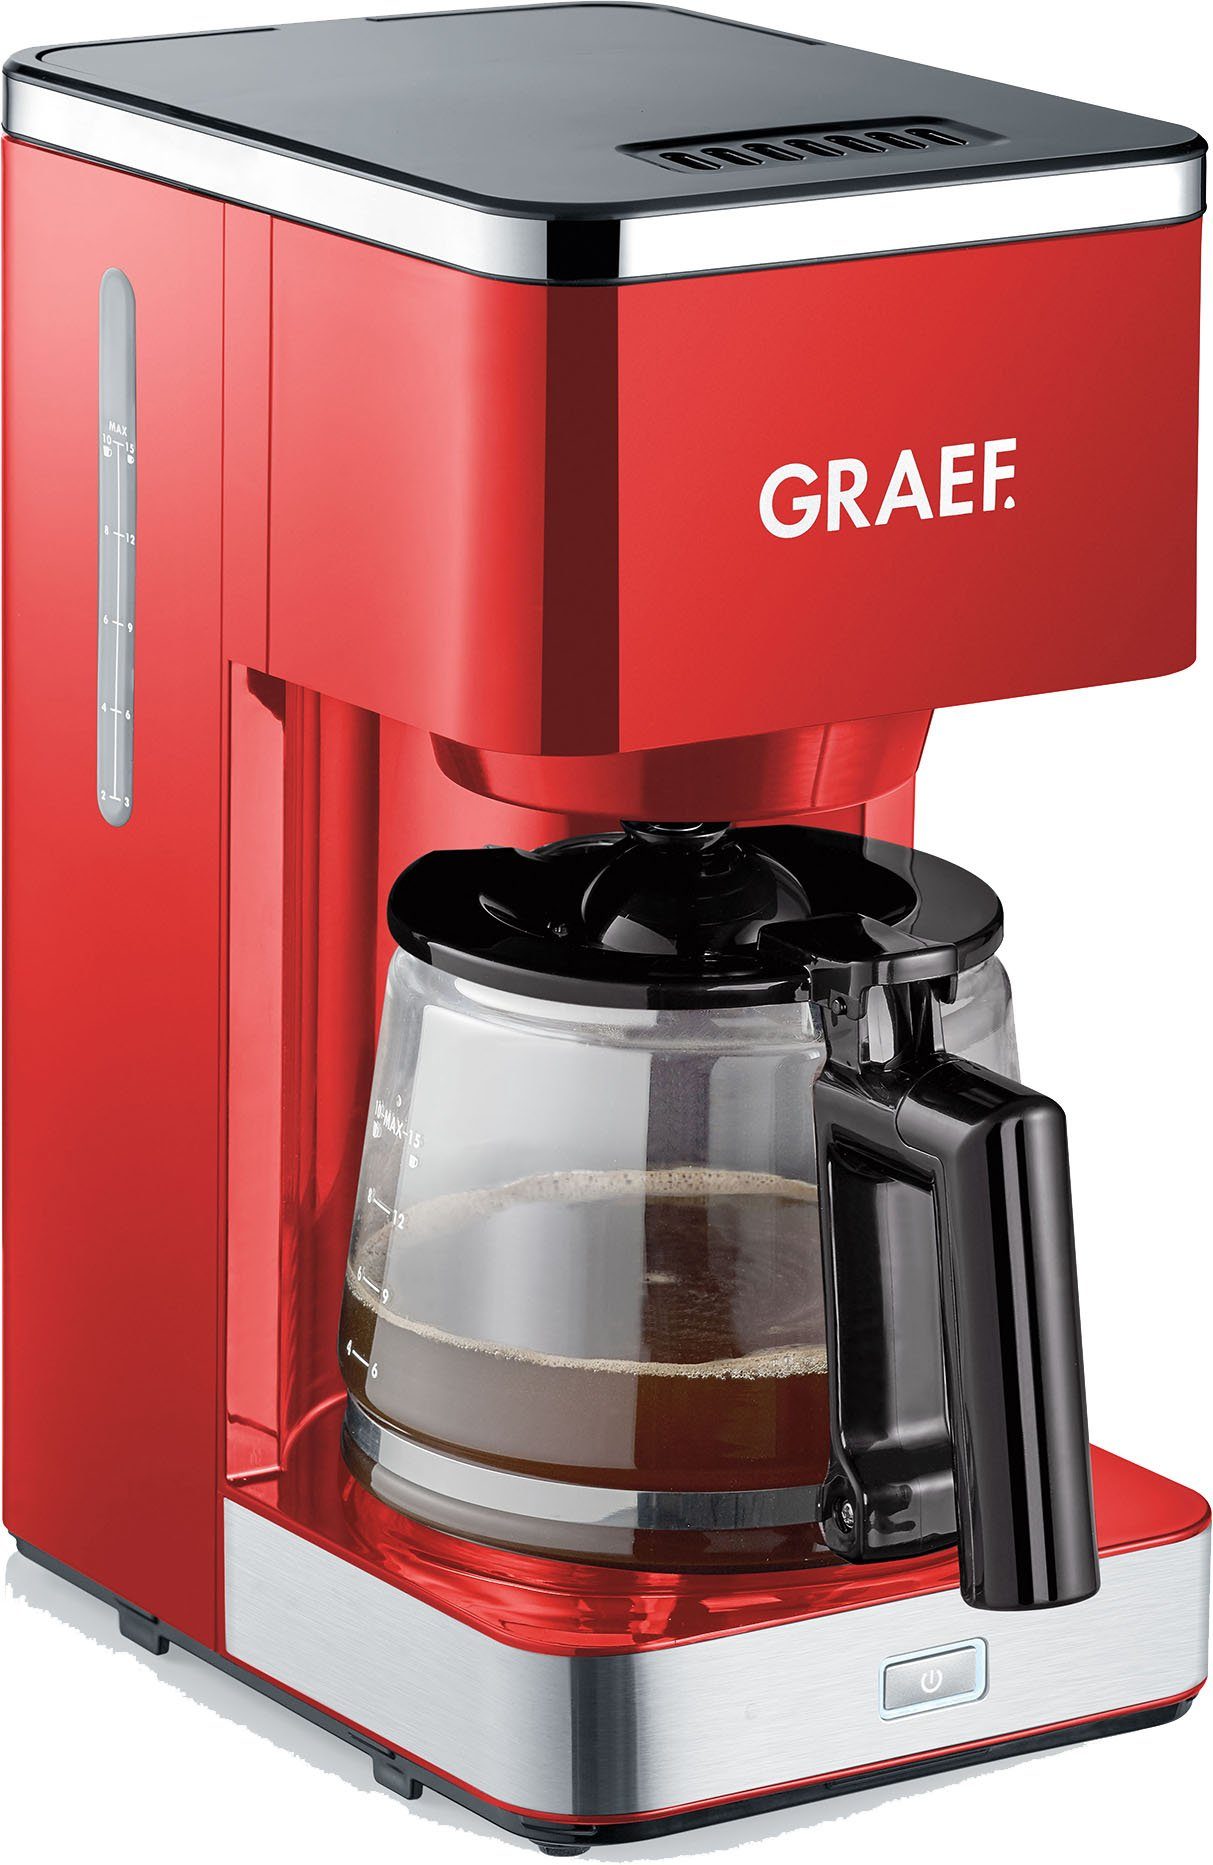 Graef Filterkaffeemaschine FK 403, 1,25l Kaffeekanne, Papierfilter 1x4, mit Glaskanne, rot